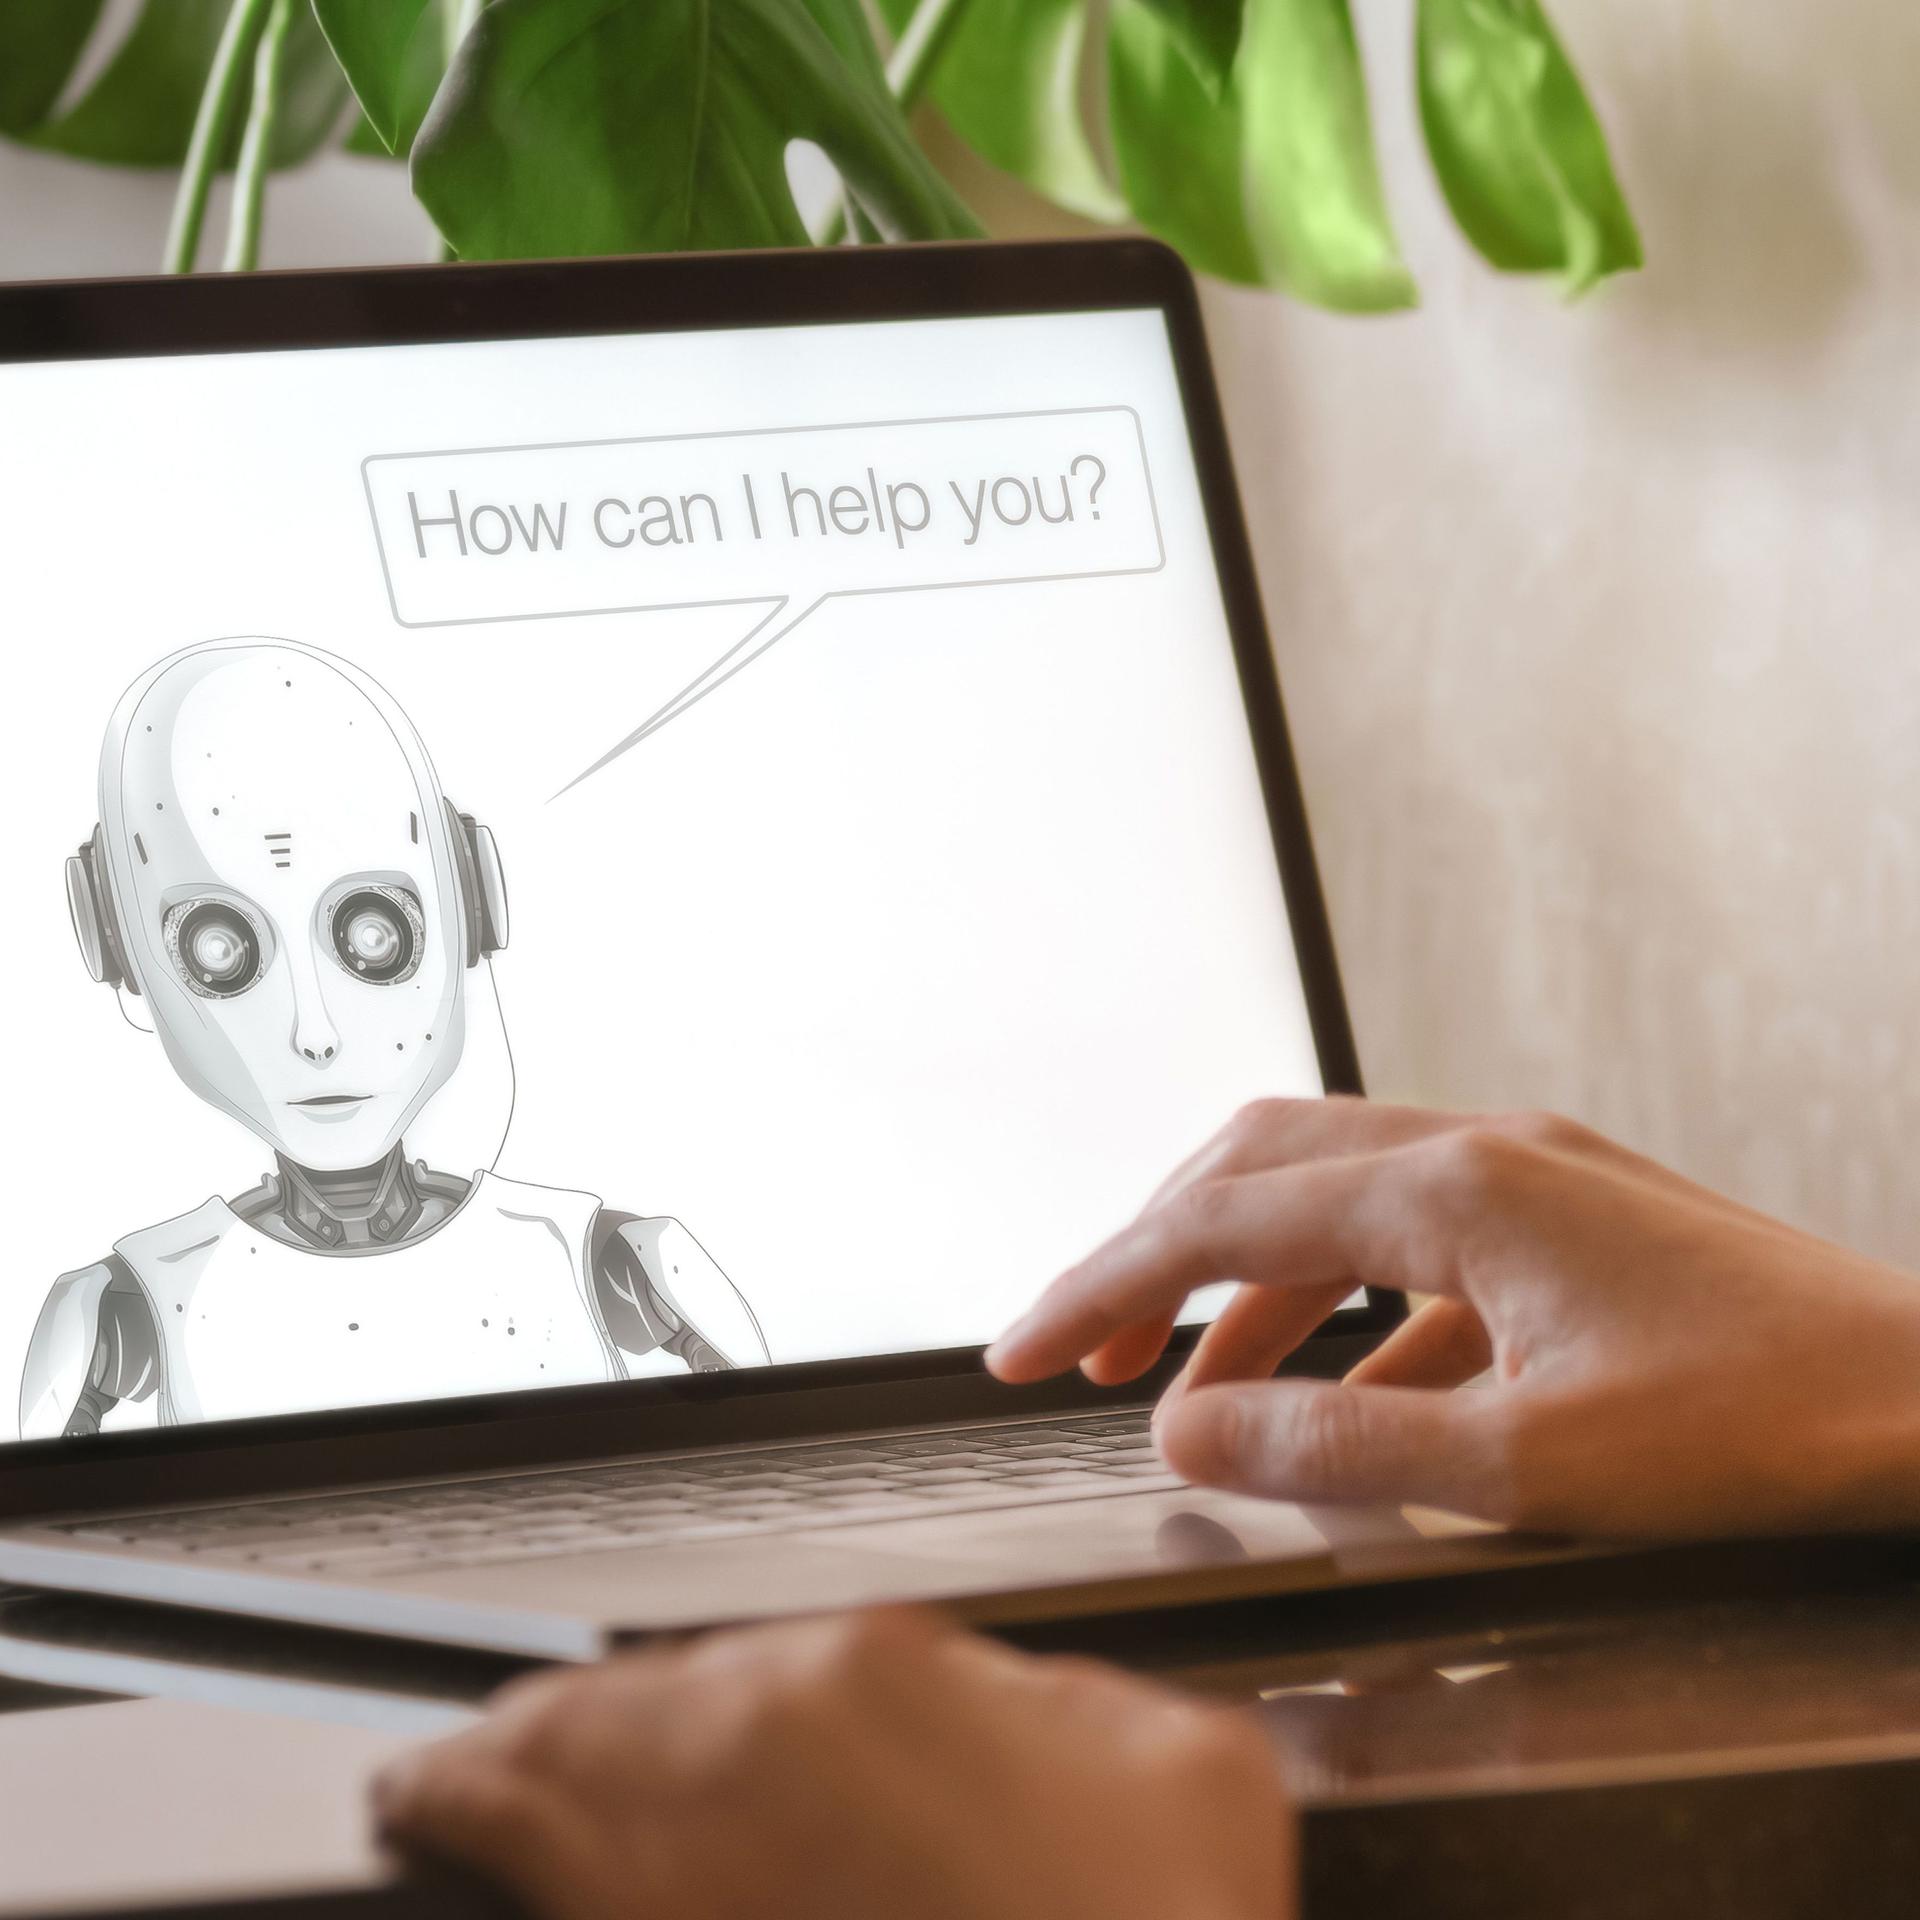 Hand auf einem aufgeklappten Laptop, auf dem Bildschirm ist ein gezeichneter Roboter, der mit der Person redet.